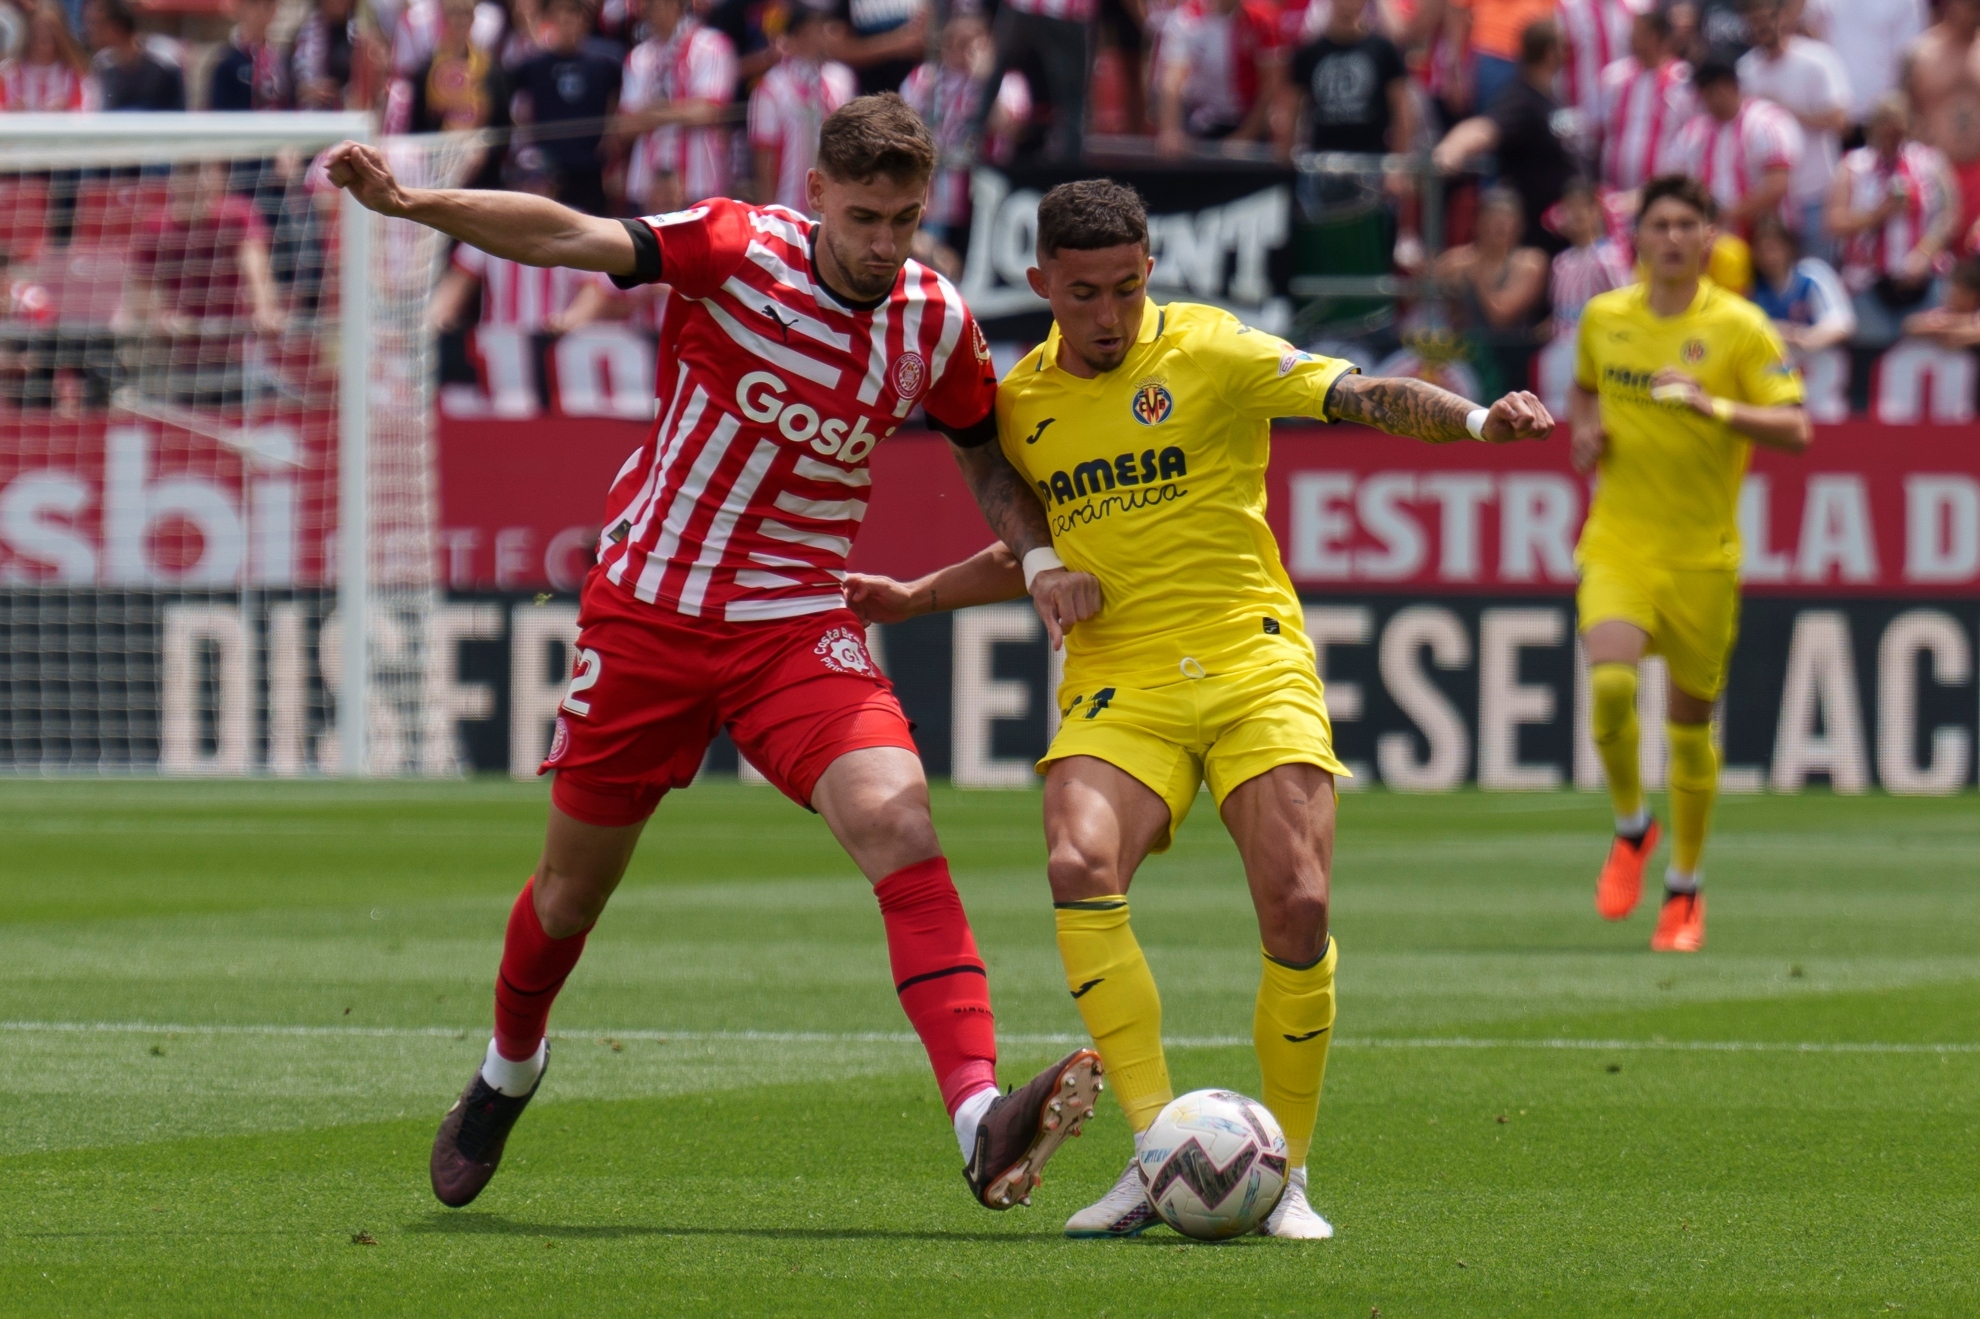 Santi Bueno y Yeremy Pino disputan un baln durante el partido Girona - Villarreal.